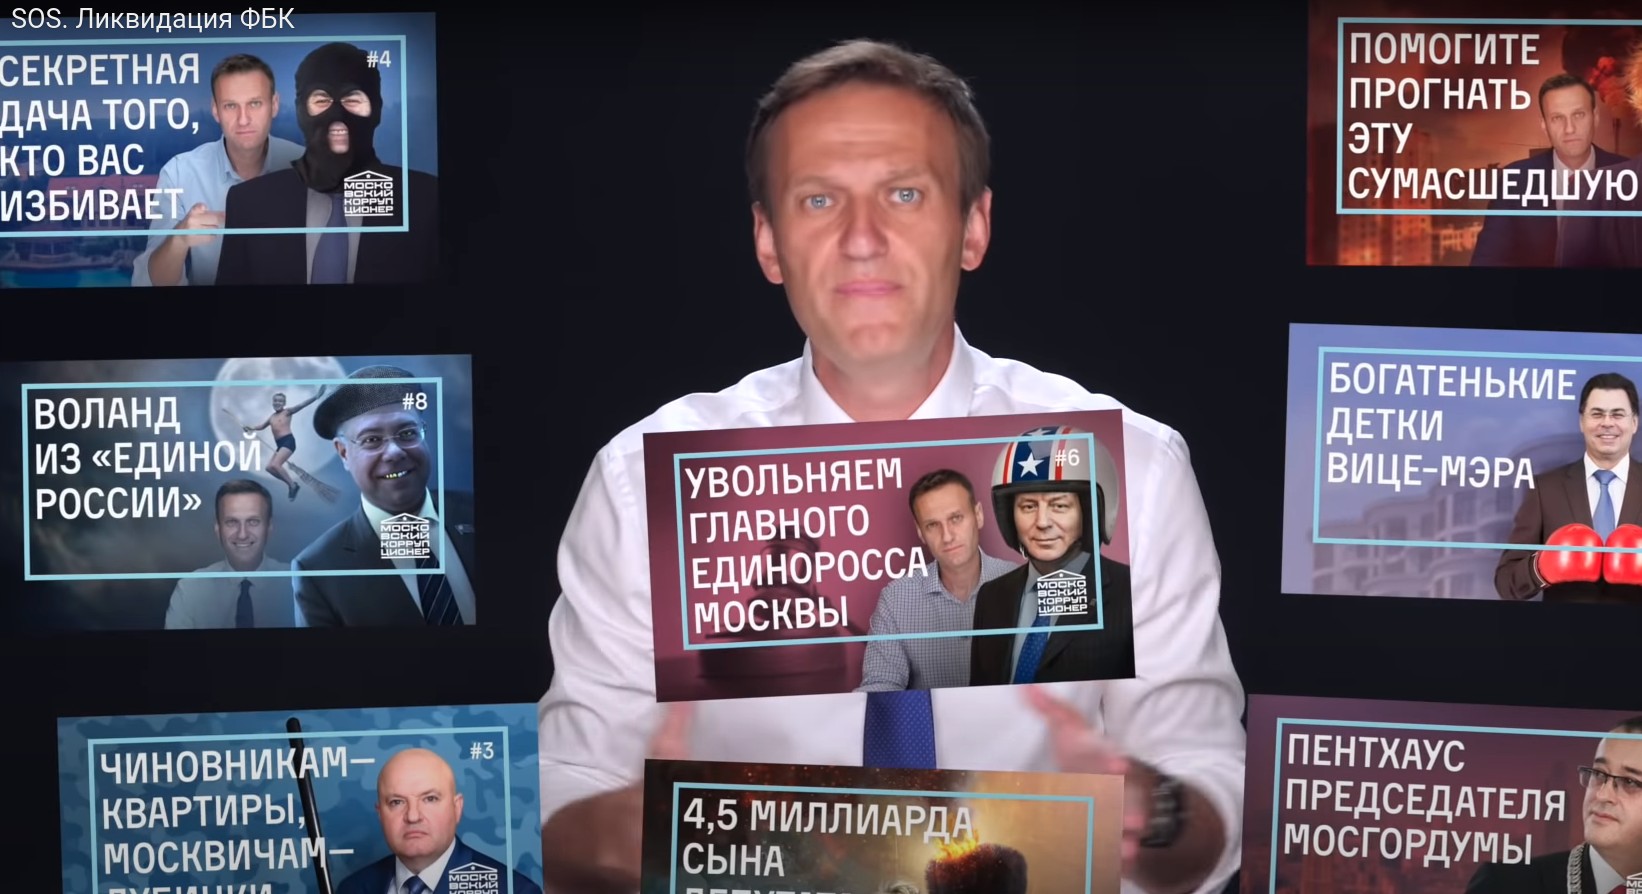 Navalny FBK